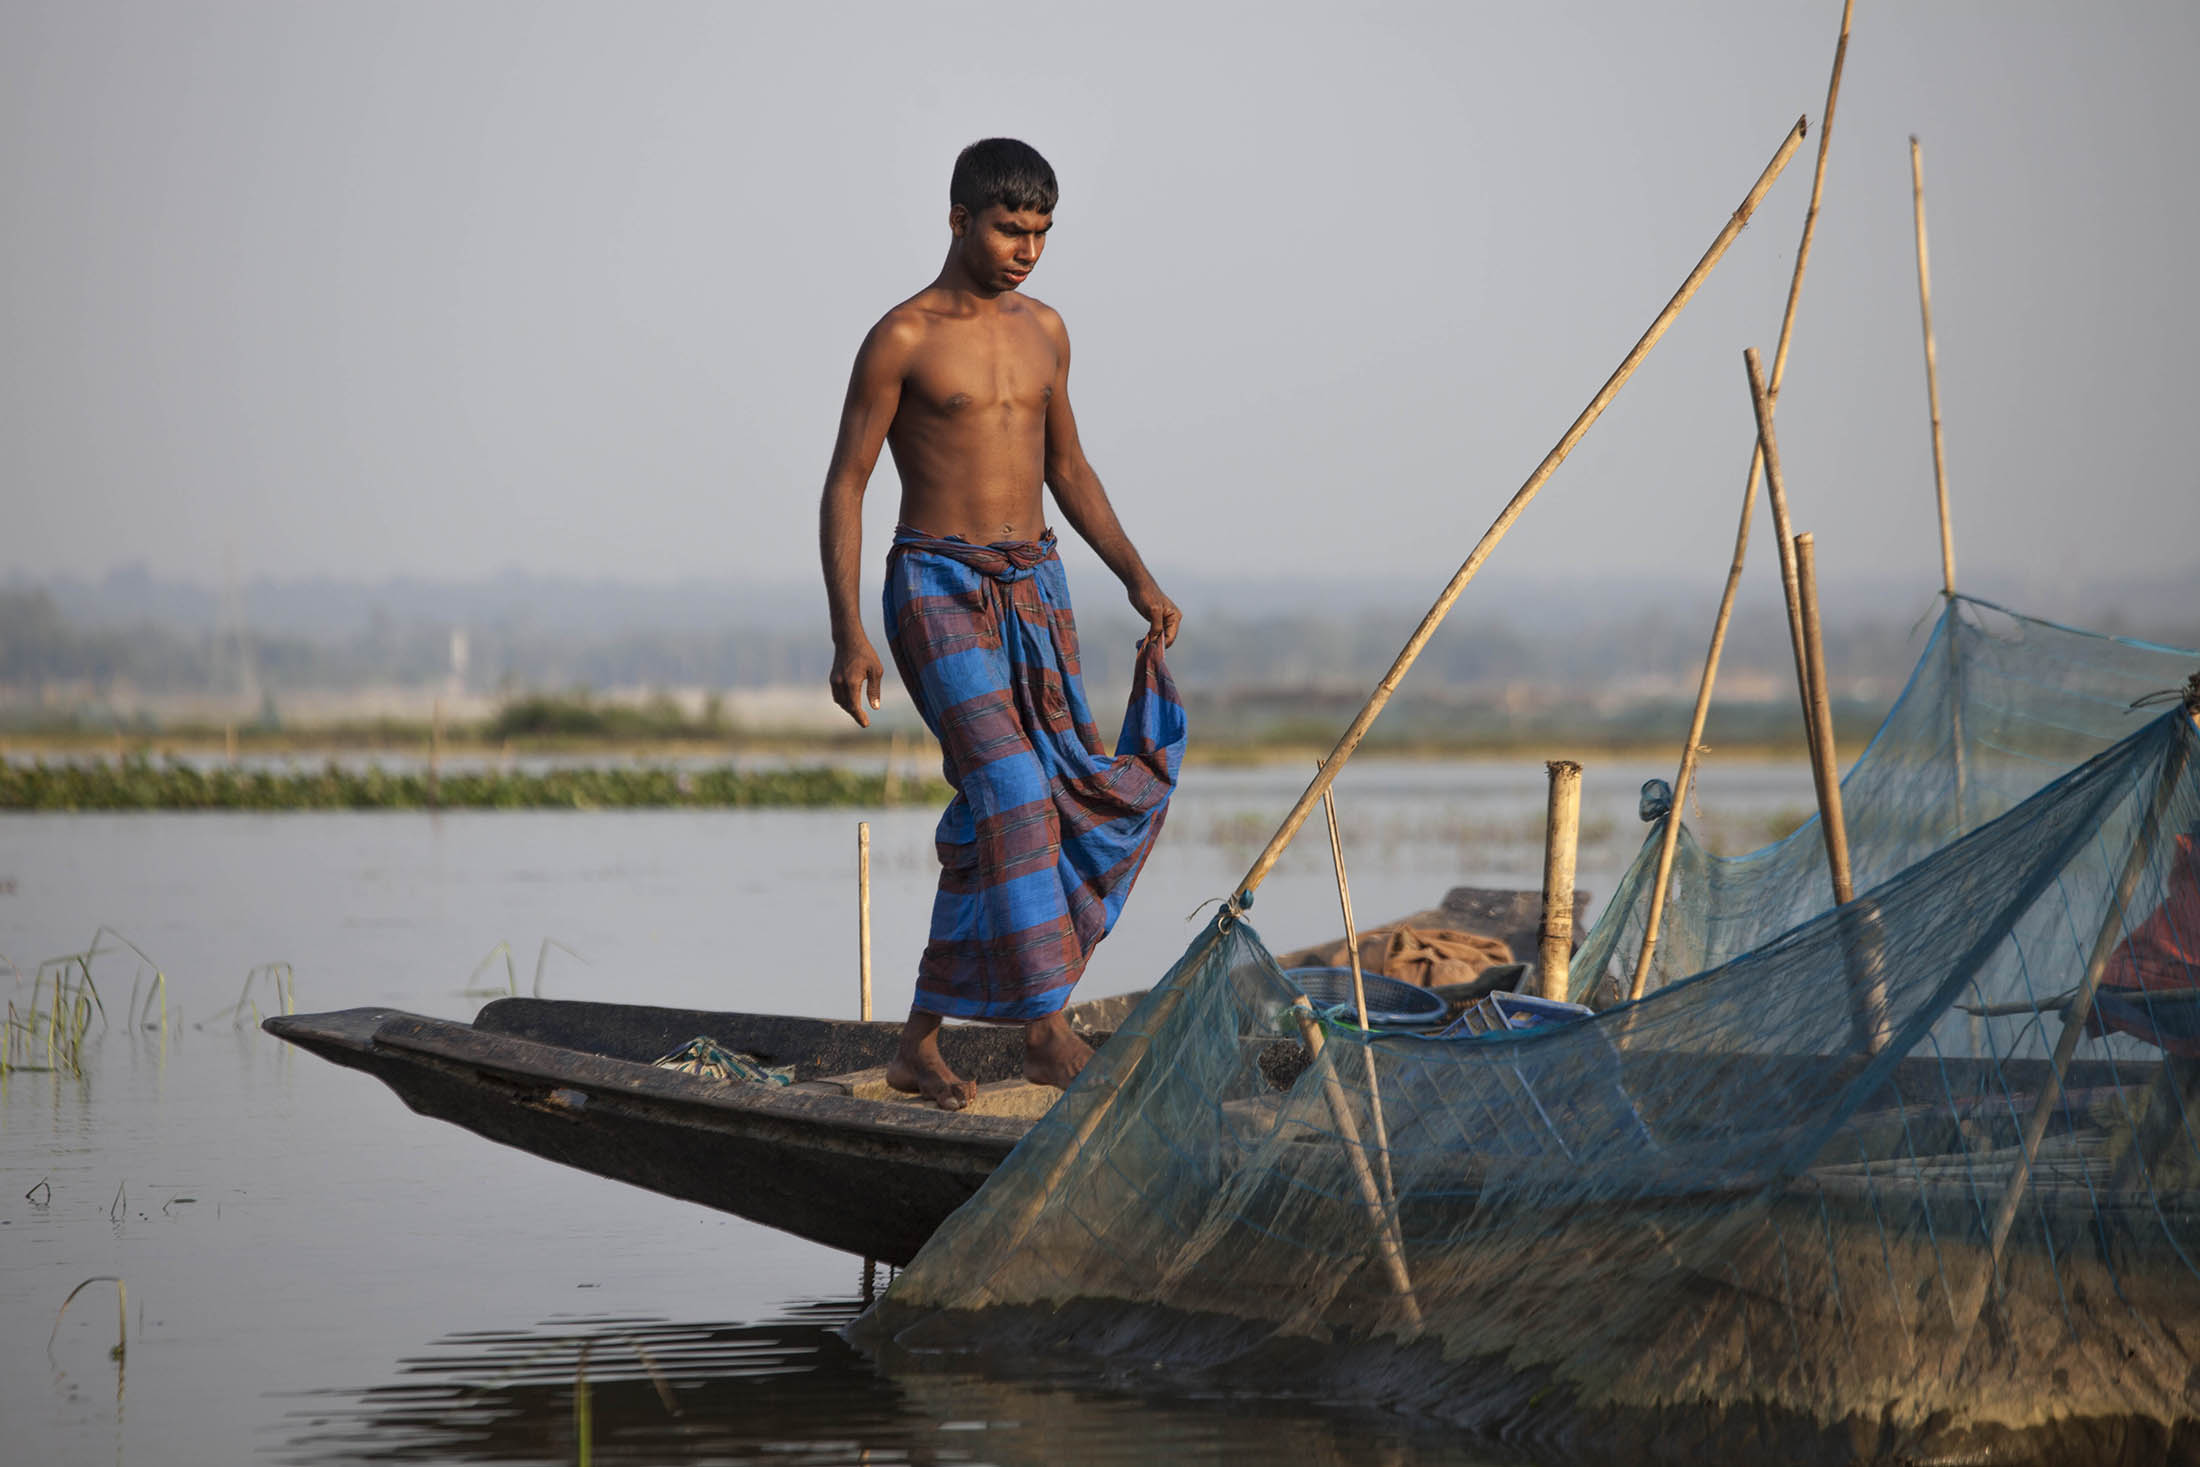 Shirtless young man on fishing boat on waterways near Sreemangal, Bangladesh